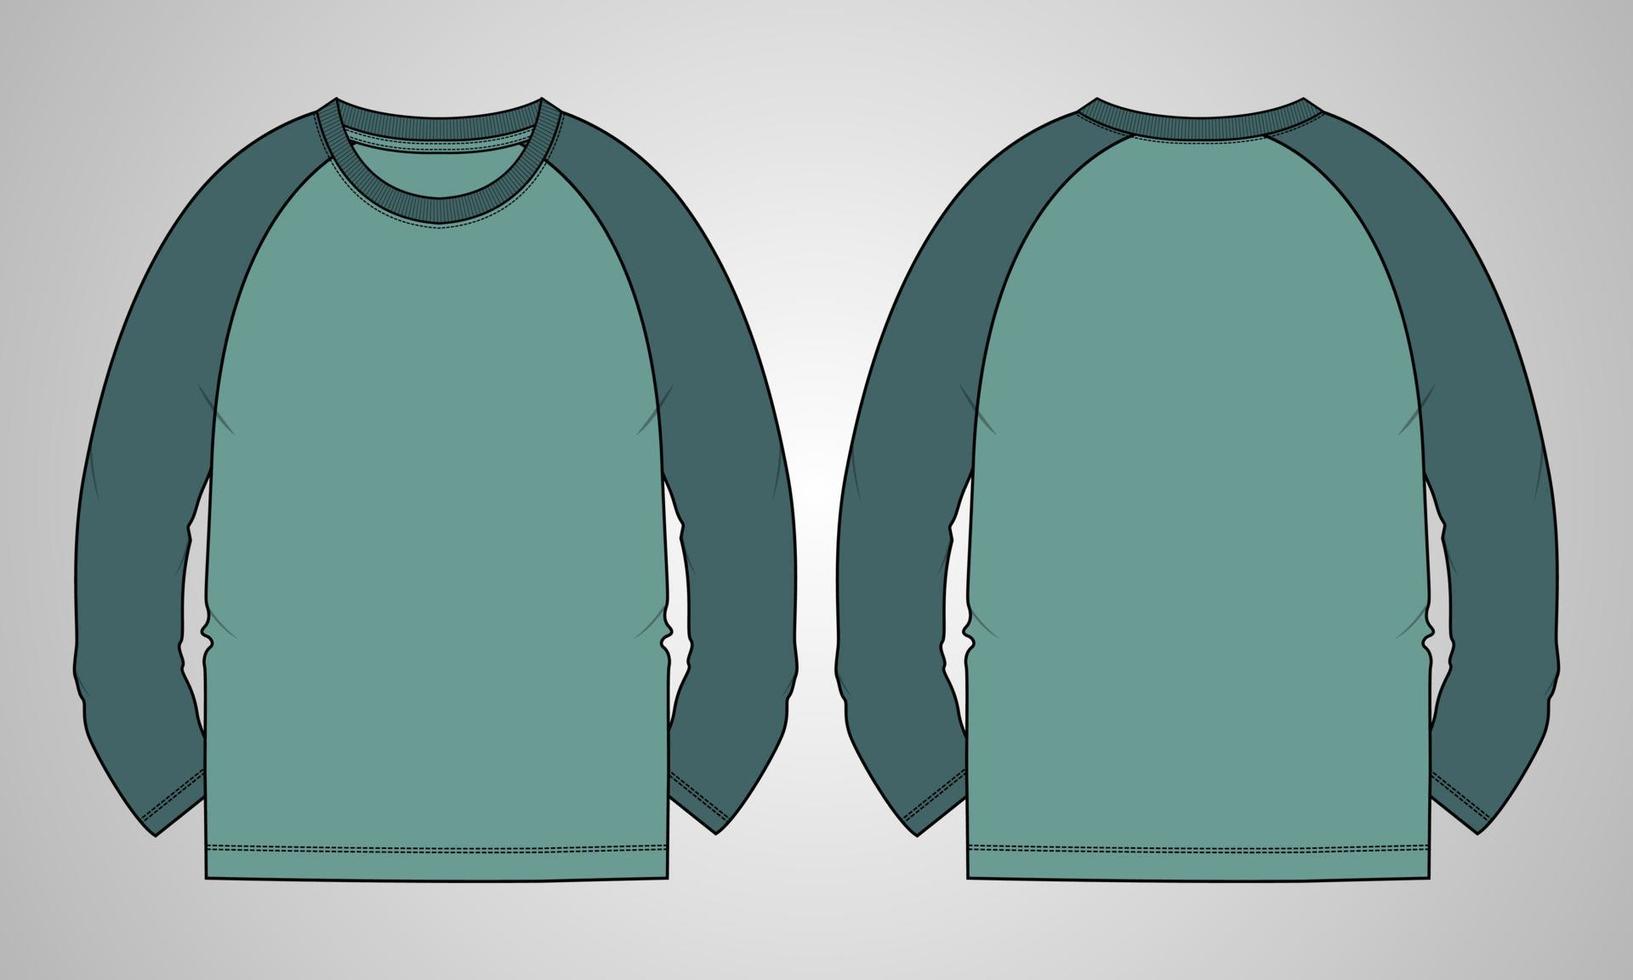 Langärmliges Raglan-T-Shirt technische Mode flache Skizzenvektor-Illustrationsschablonenvorderseite, hintere Ansichten lokalisiert auf grauem Hintergrund. Regular Fit Basic Bekleidungsdesign Mock-up. vektor